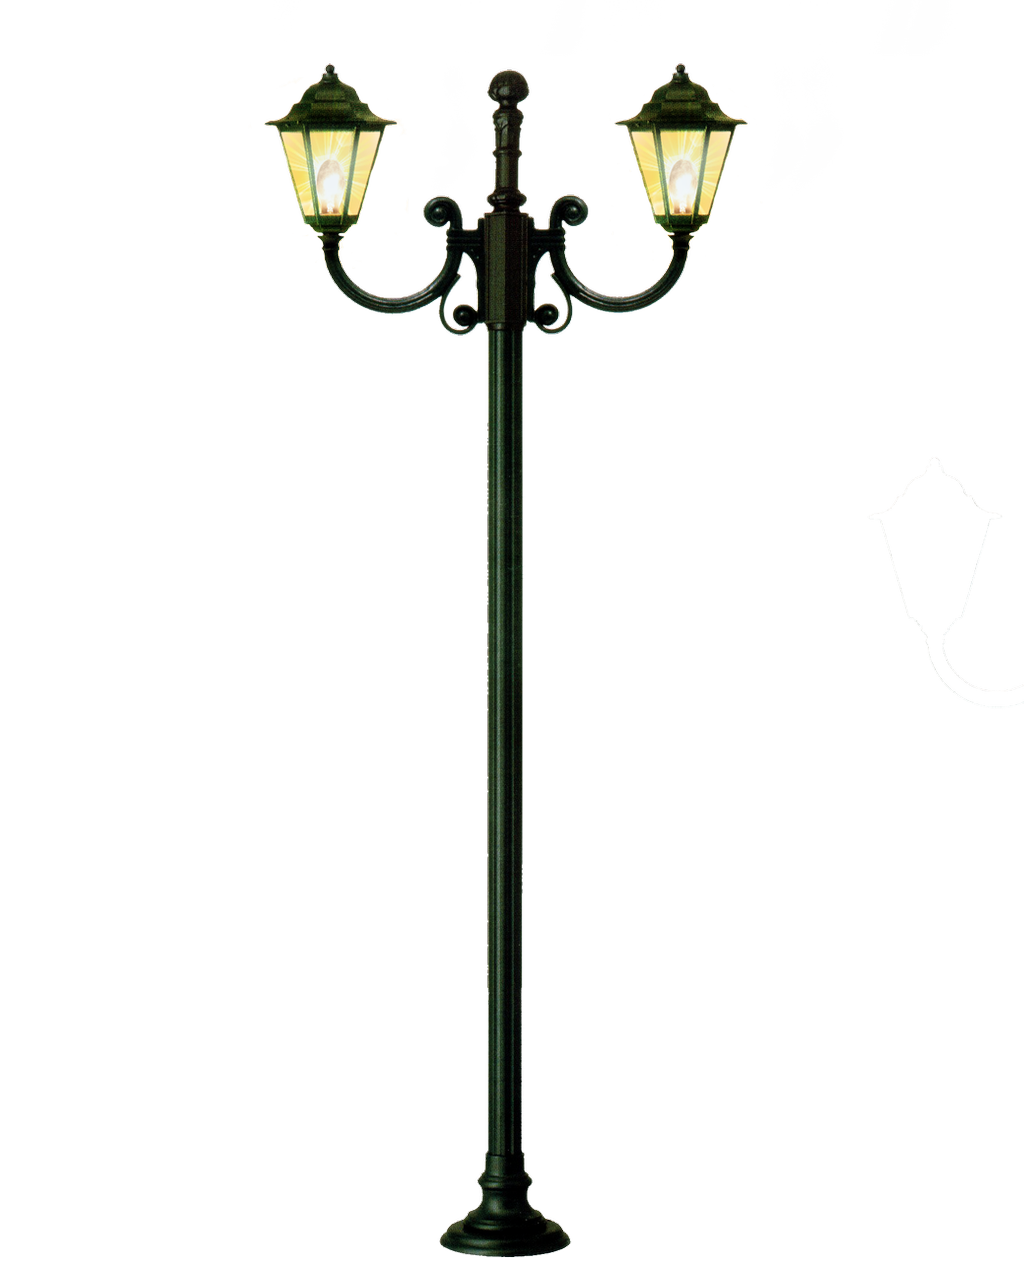 Фонарь без фона. «Уличный свет» (Streetlight, 1997). Уличный фонарь Форестер 1062. Фонарь на прозрачном фоне. Уличный фонарь на прозрачном фоне.